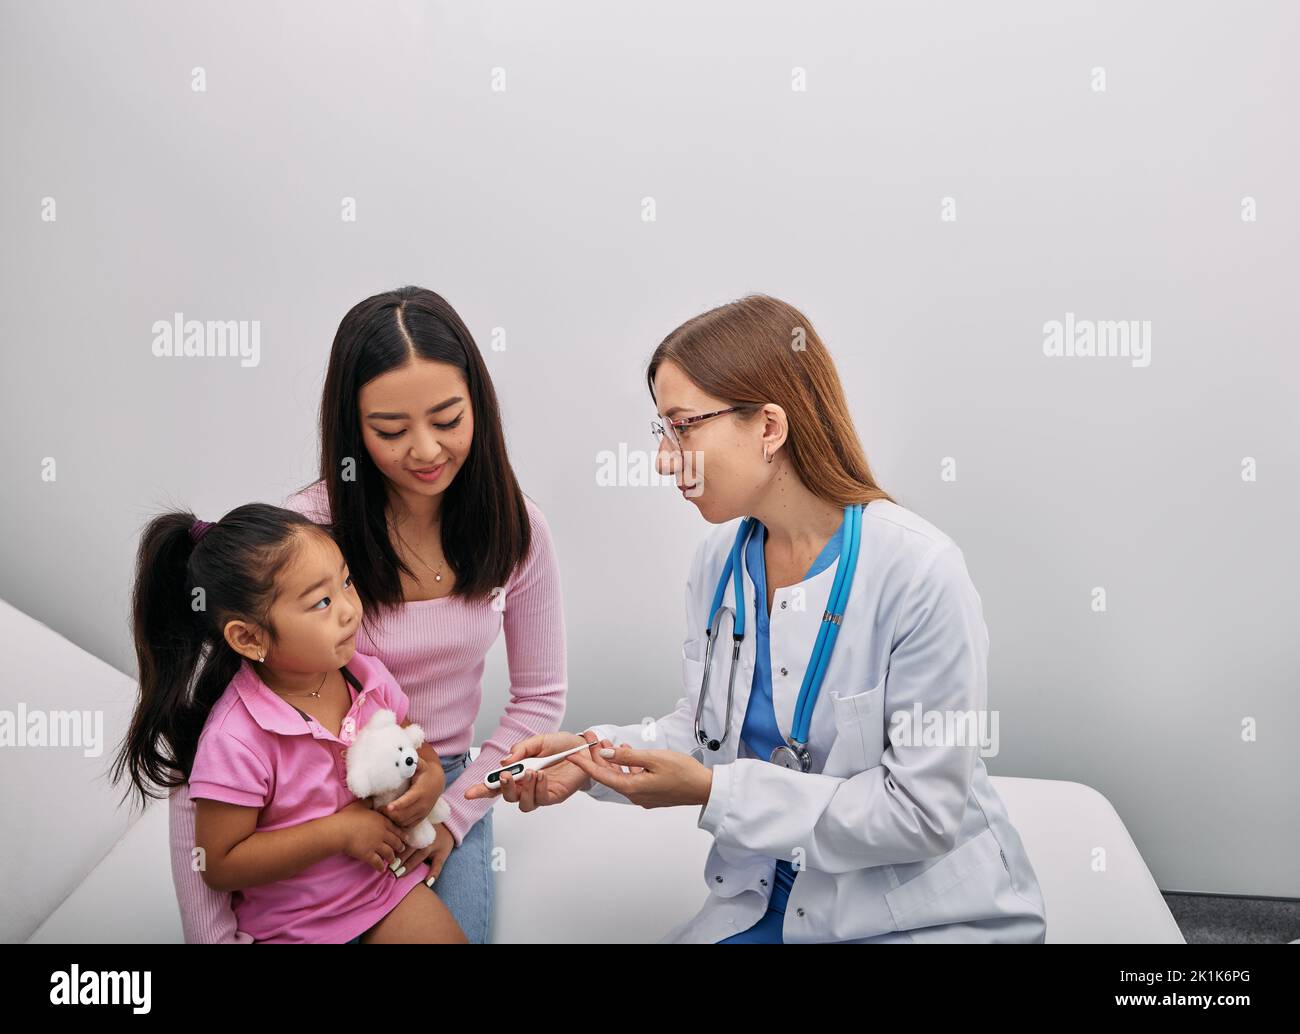 Parent japonais avec une femme enfant pendant un examen médical à l'hôpital. Consultation pédiatre Banque D'Images